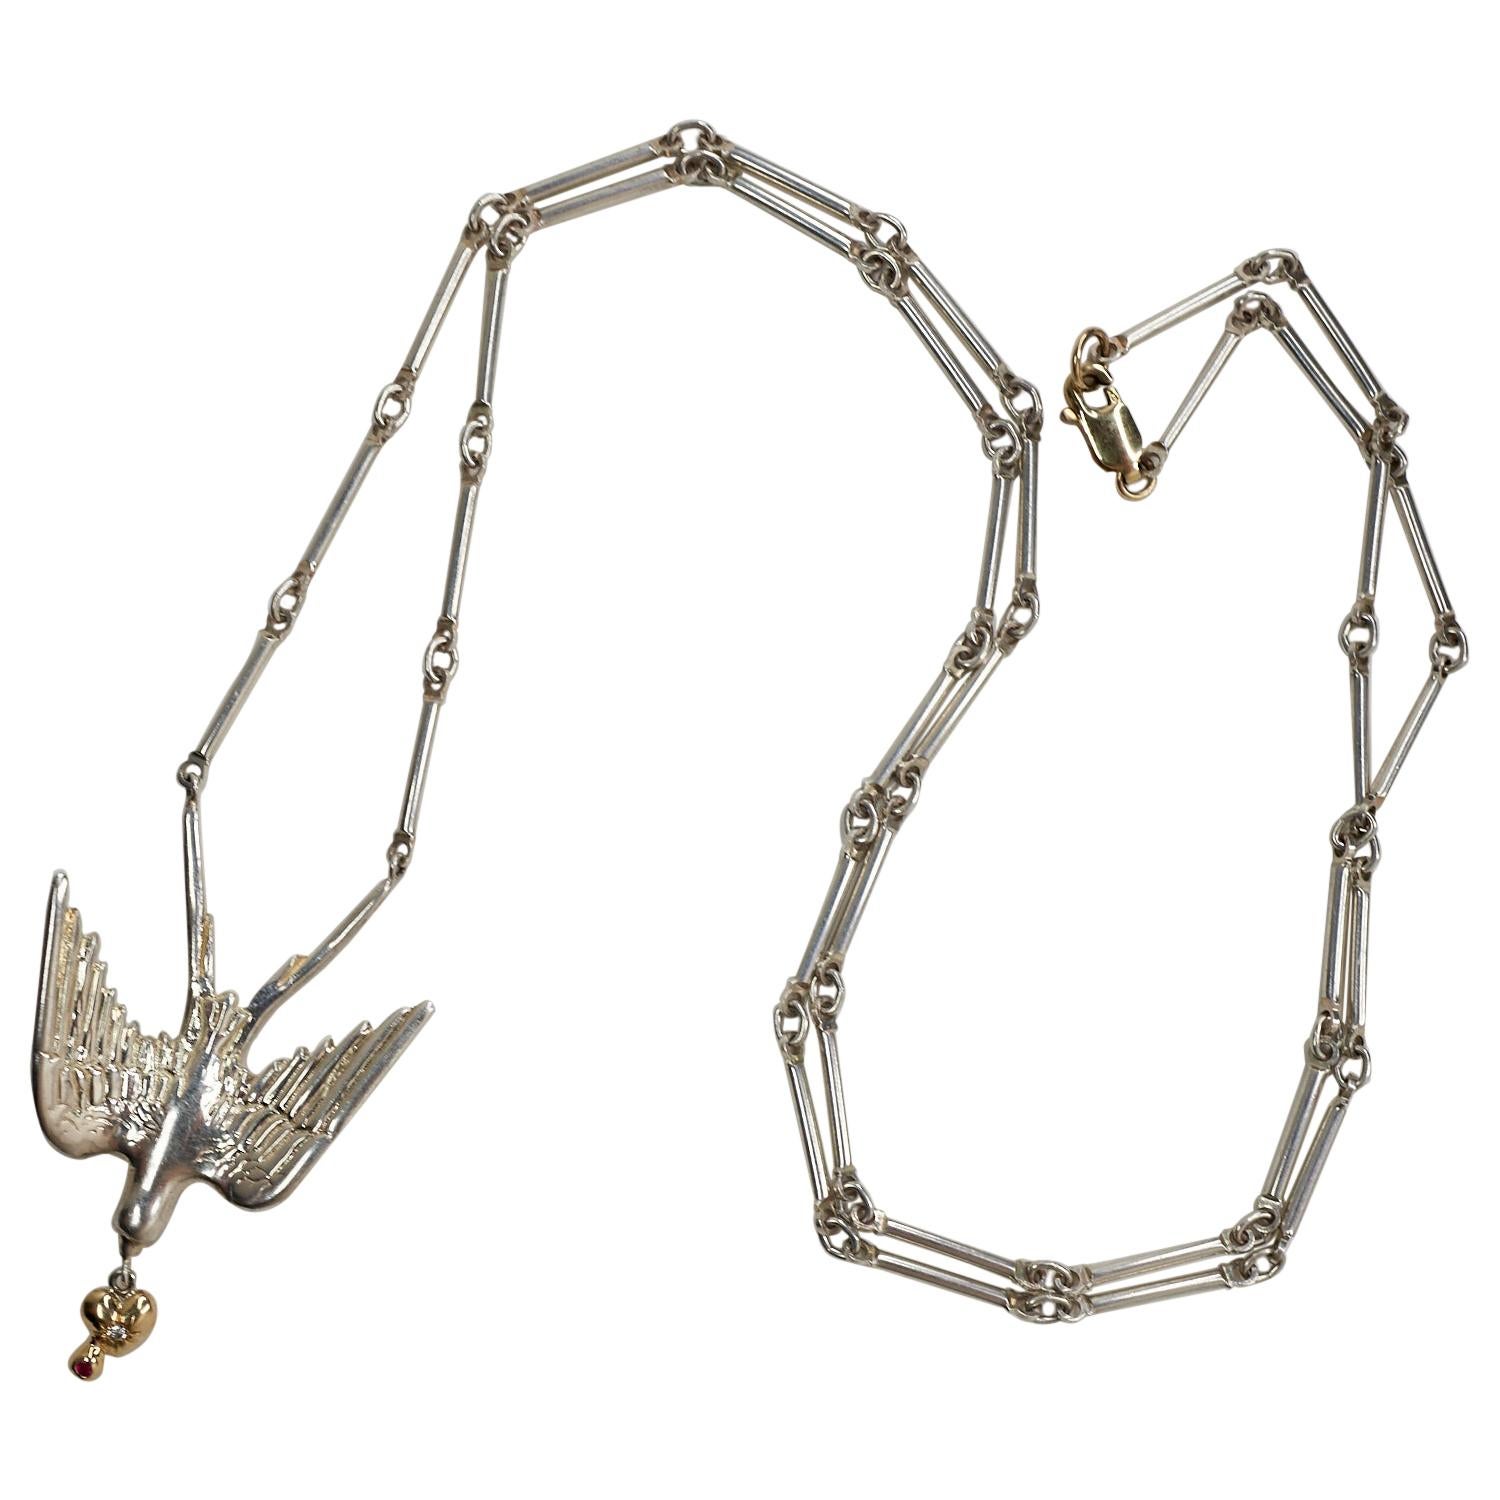 Collier à chaîne avec diamant blanc, rubis, hirondelle, colombe, oiseau, cœur en or et argent sterlingJ Dauphin
28